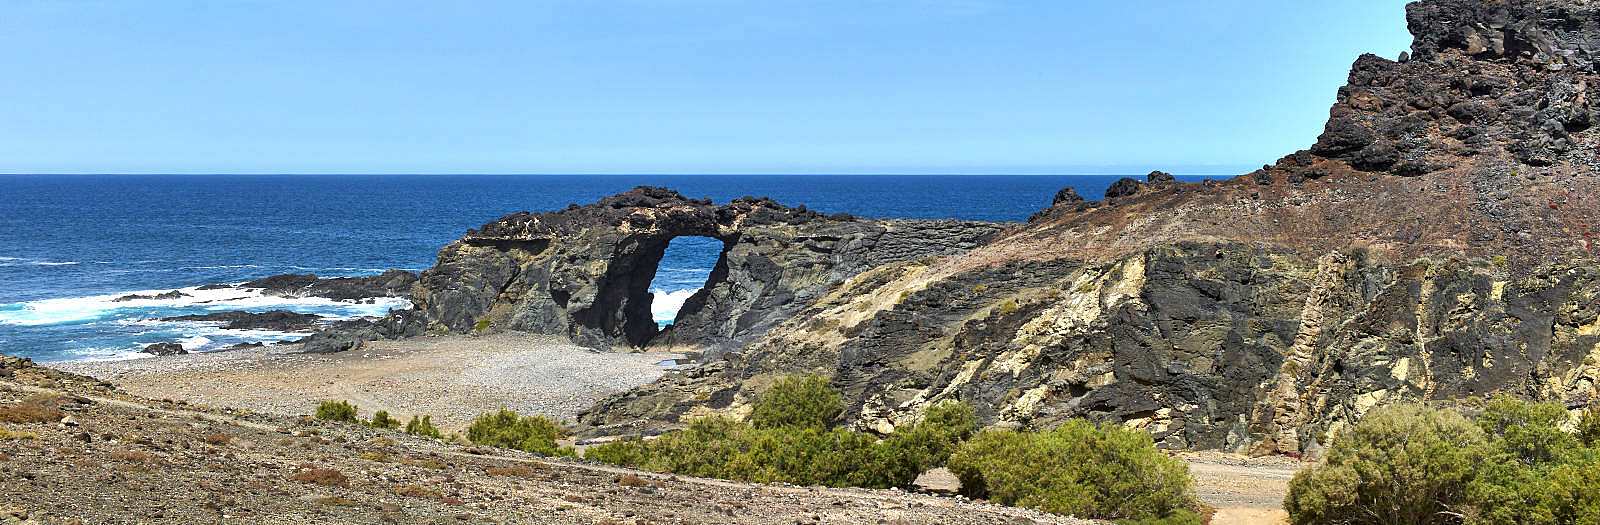 Arco del Jurado aka. Peña Horadada Ajuy Fuerteventura.